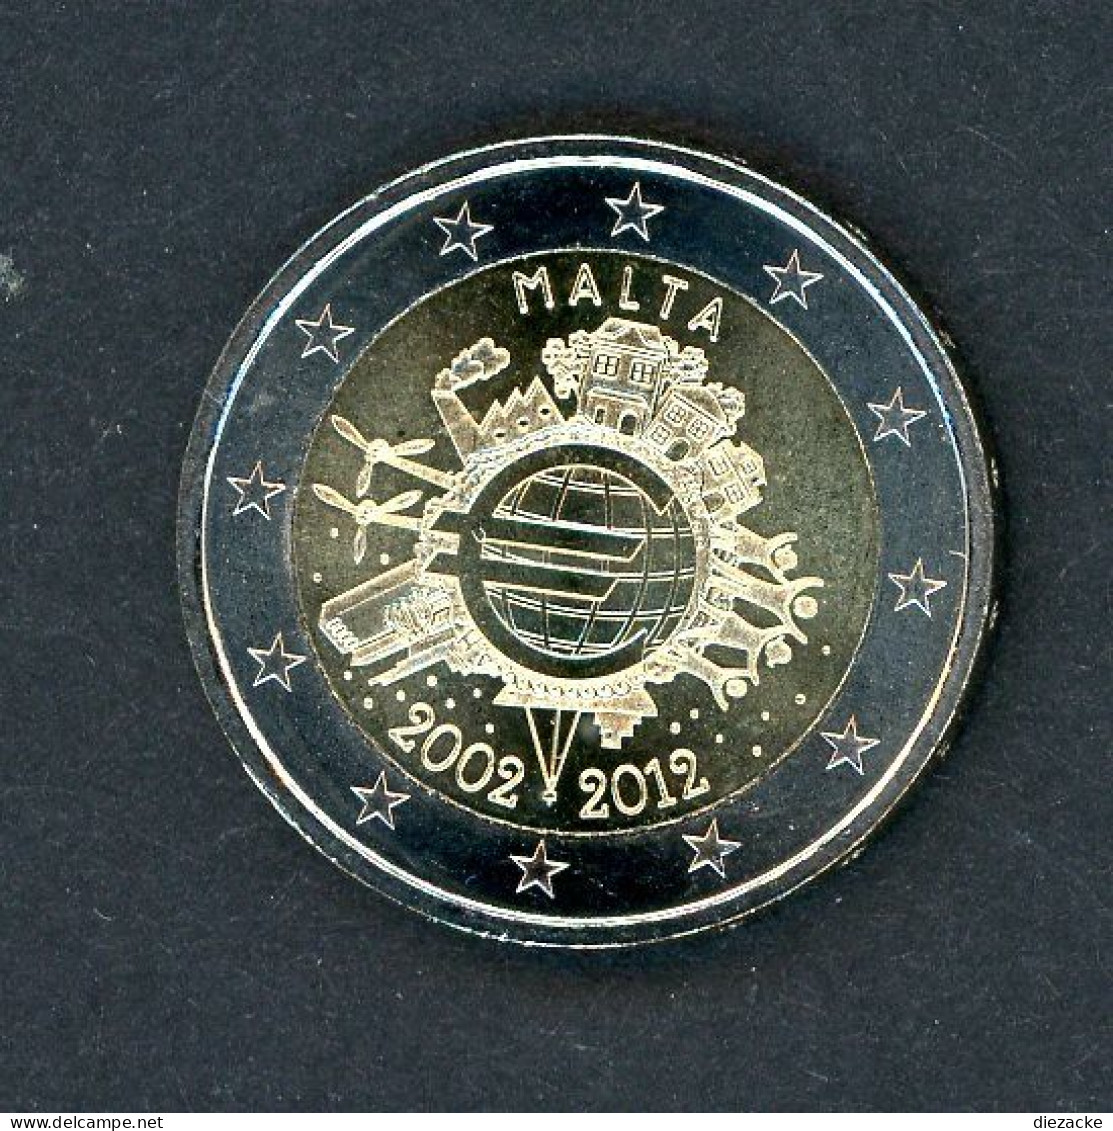 Malta 2012 2 Euro 10 Jahre Euro-Bargeld ST (M5001 - Malta